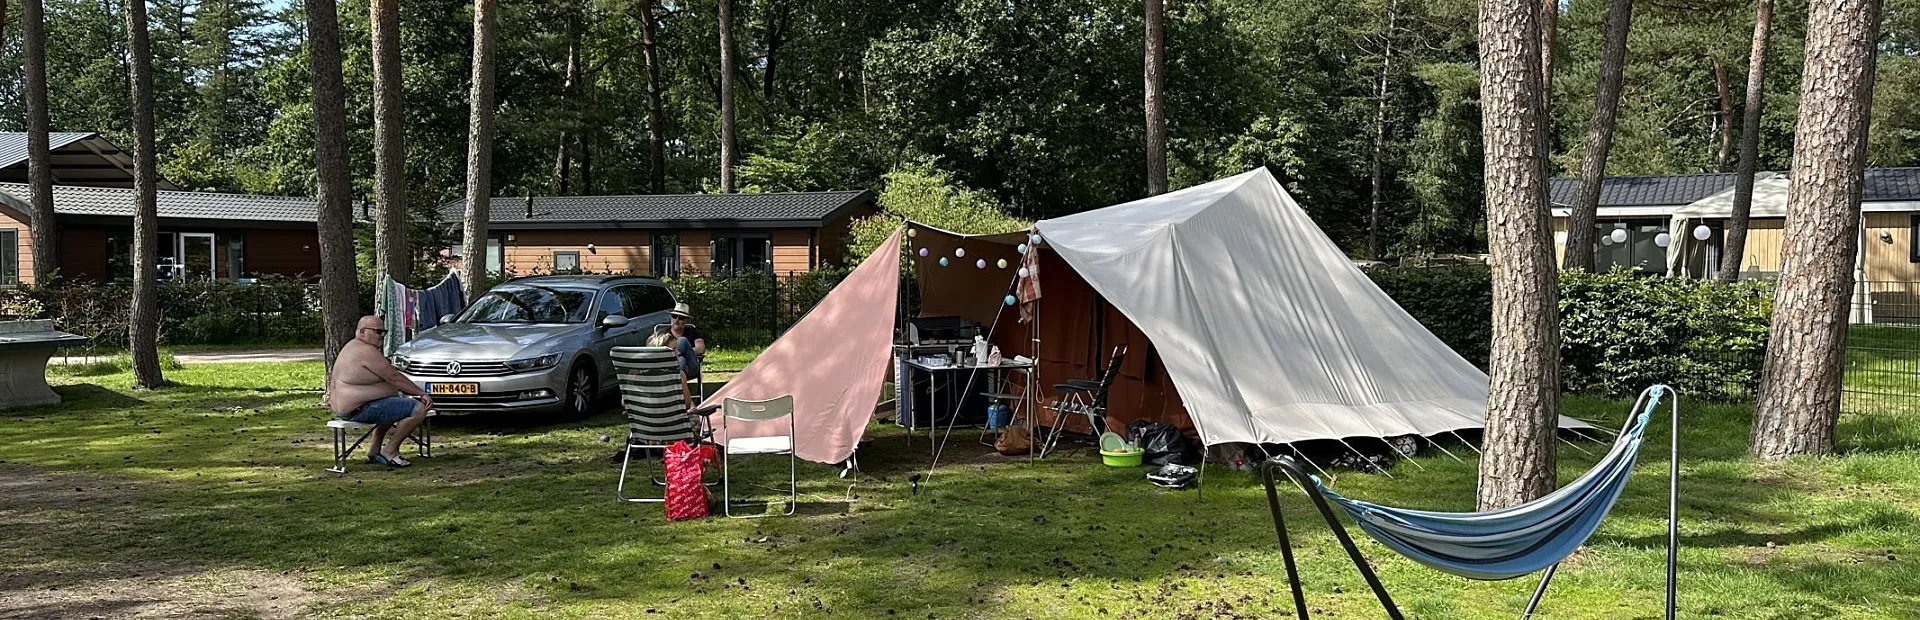 Camping Veluwe Torenvalk 12